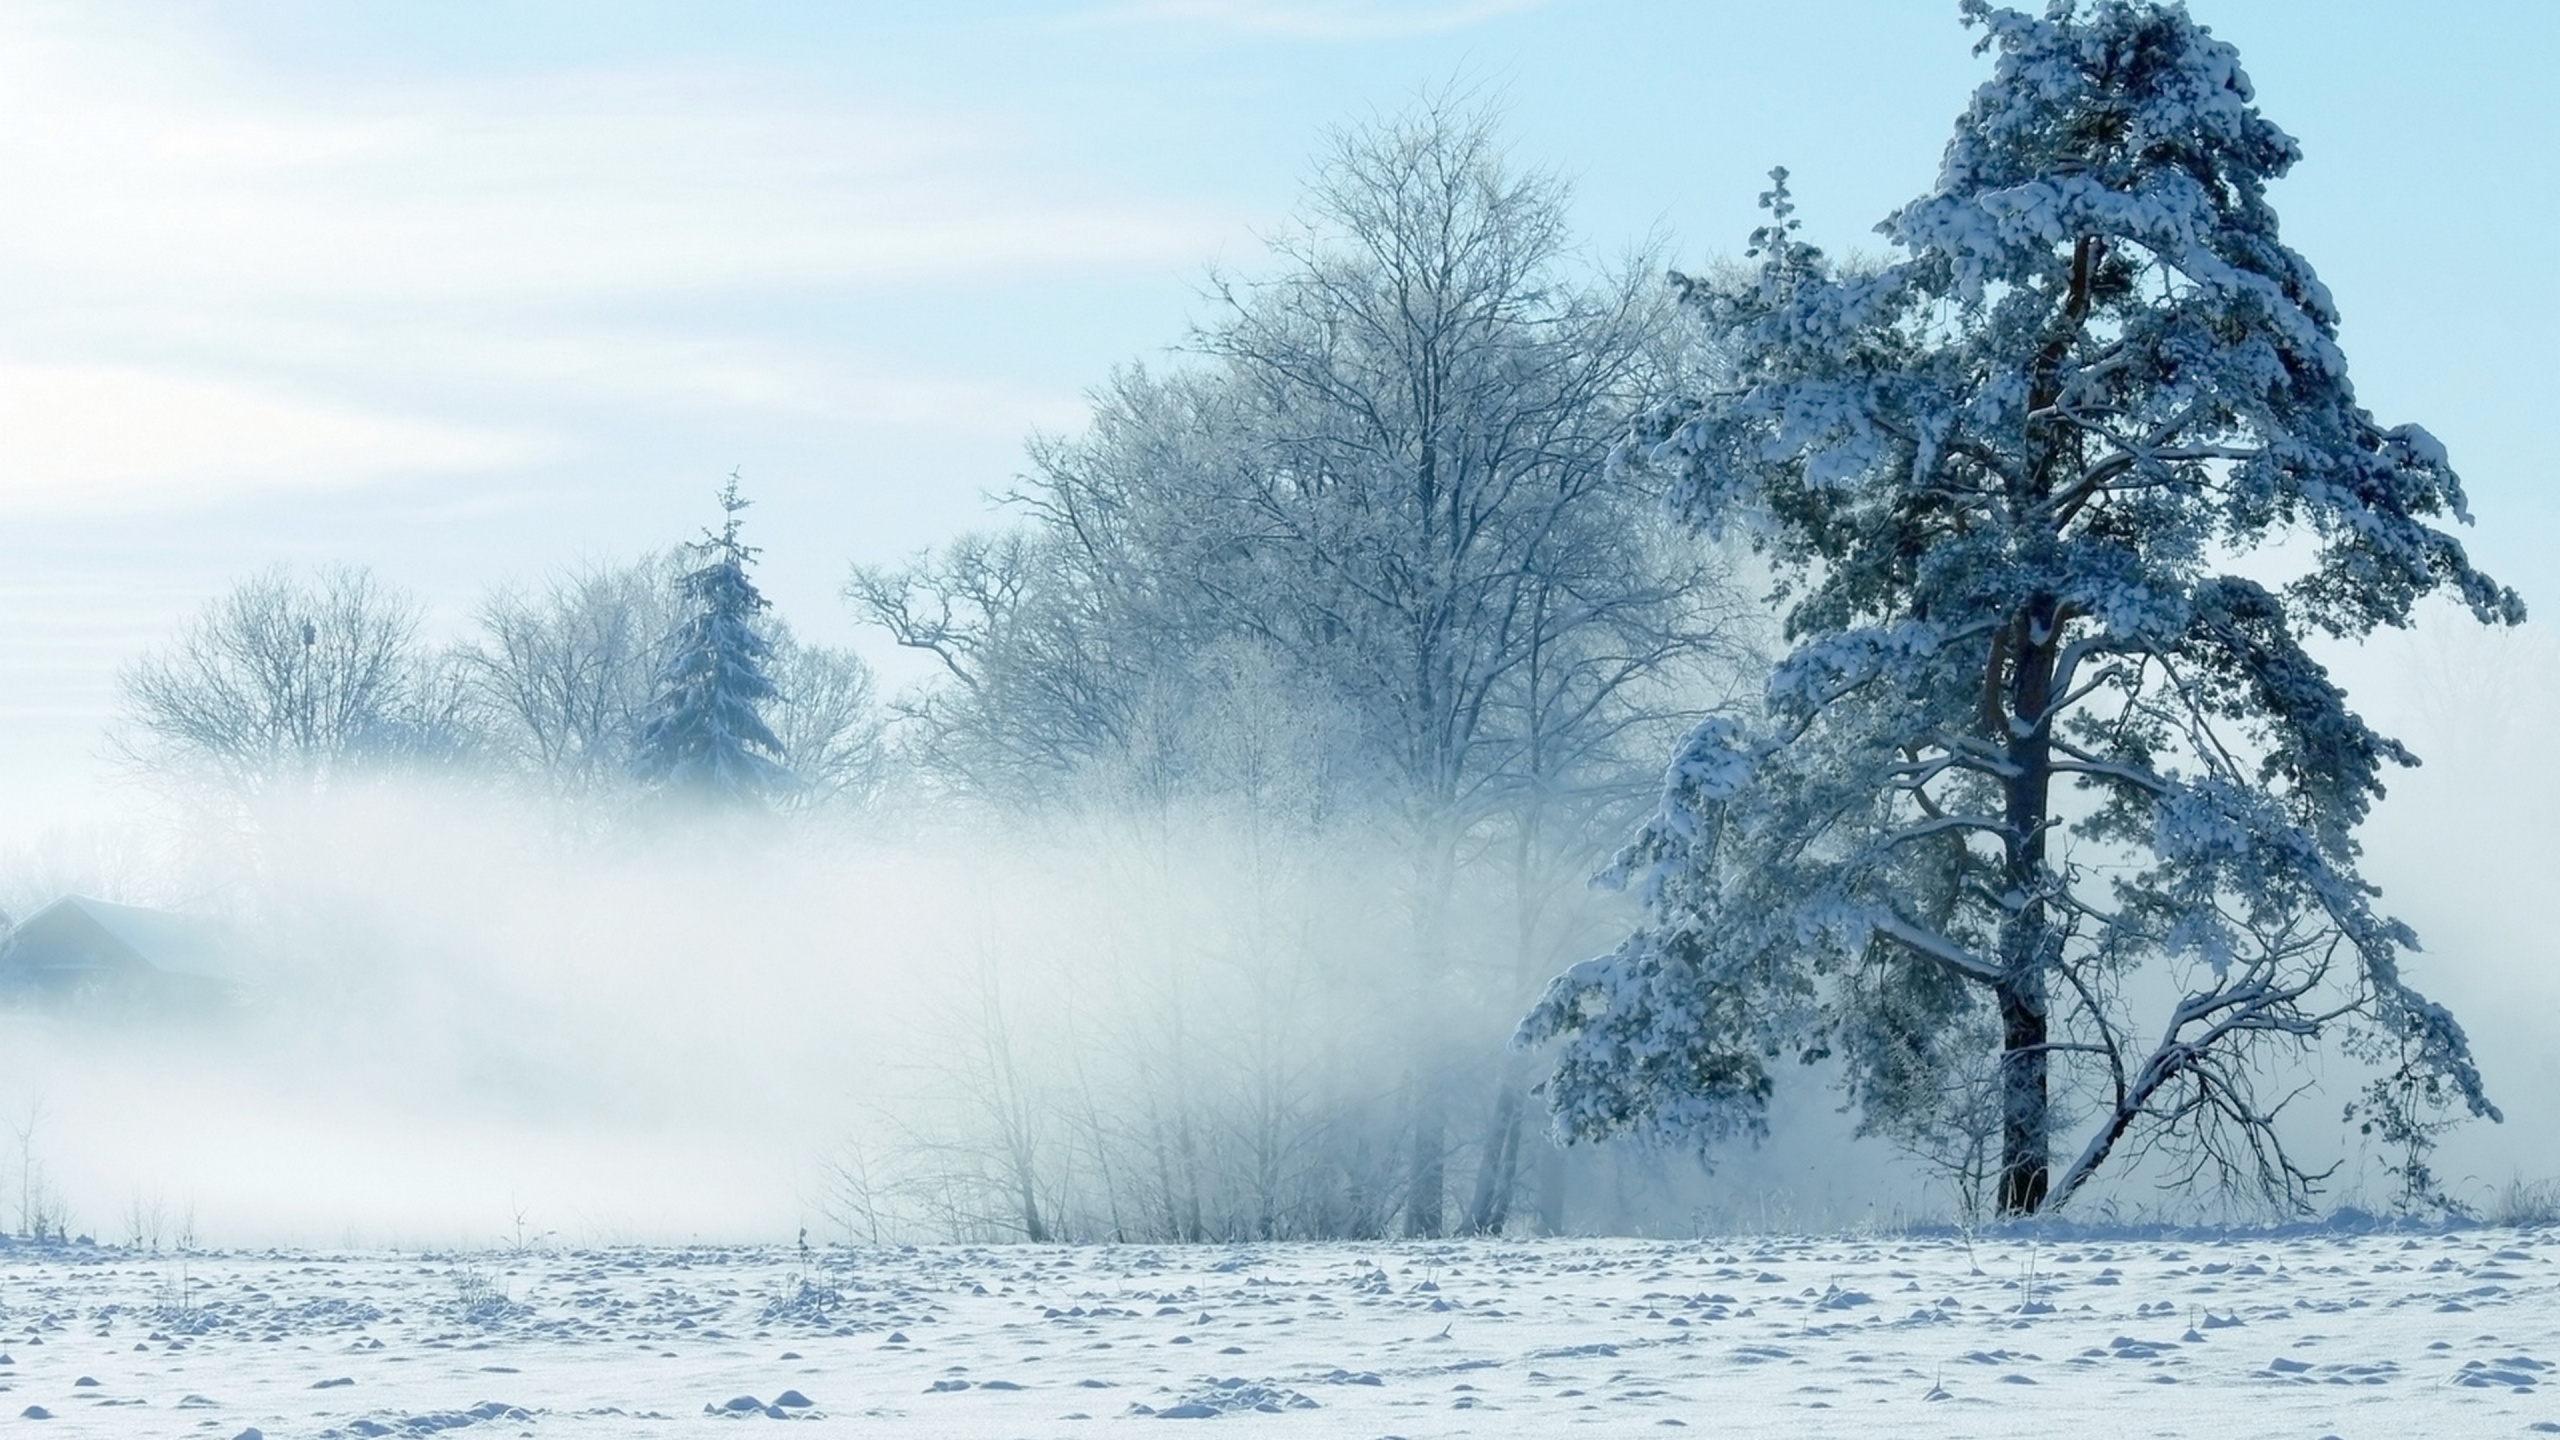 风景画, 冬天, 性质, 冻结, 一天 壁纸 2560x1440 允许